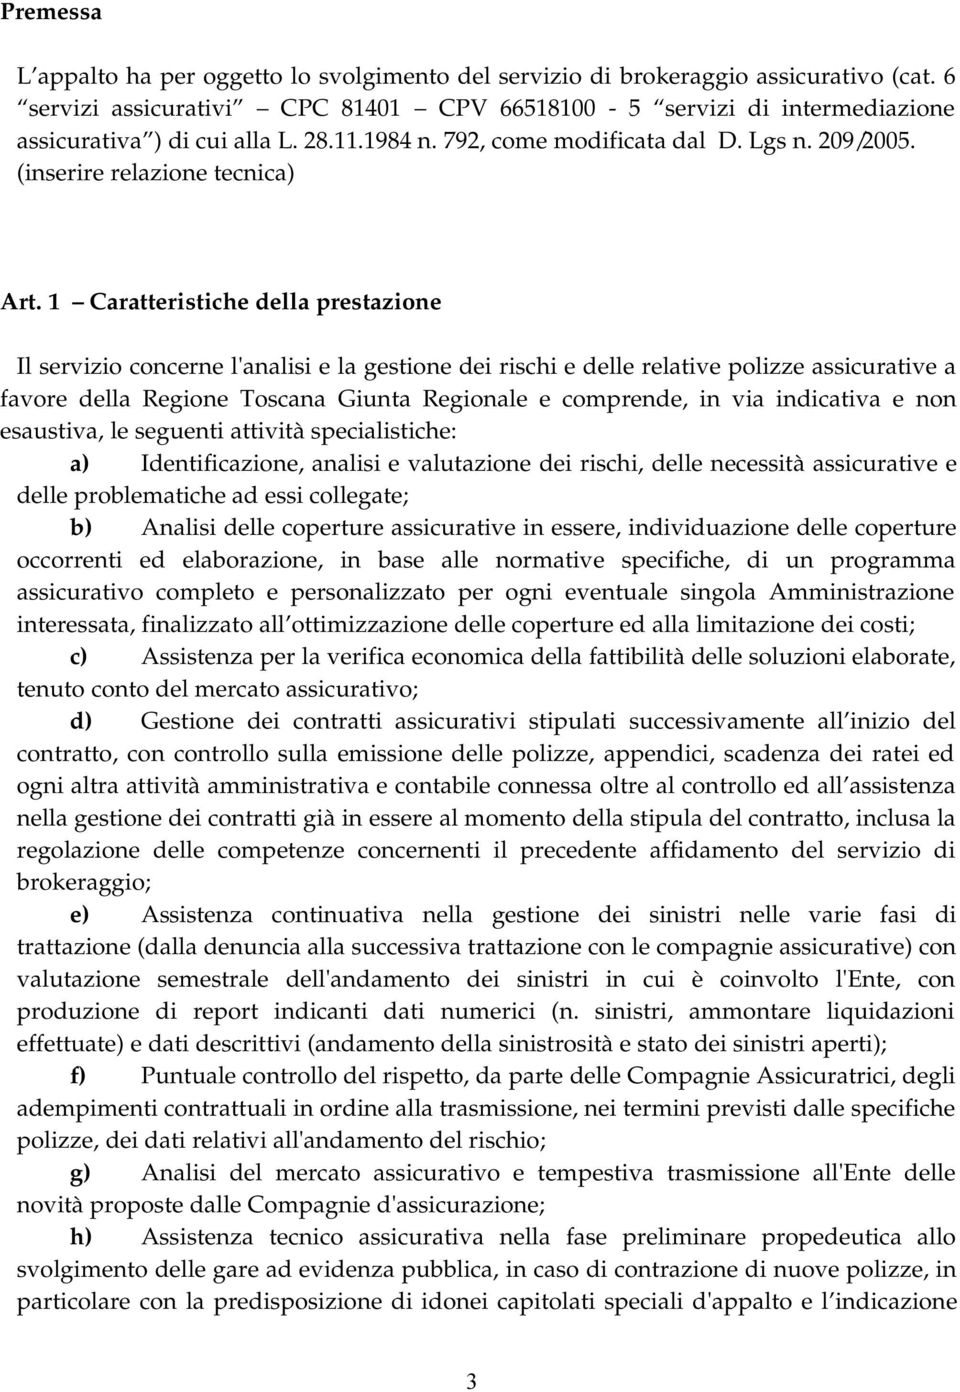 1 Caratteristiche della prestazione Il servizio concerne l'analisi e la gestione dei rischi e delle relative polizze assicurative a favore della Regione Toscana Giunta Regionale e comprende, in via